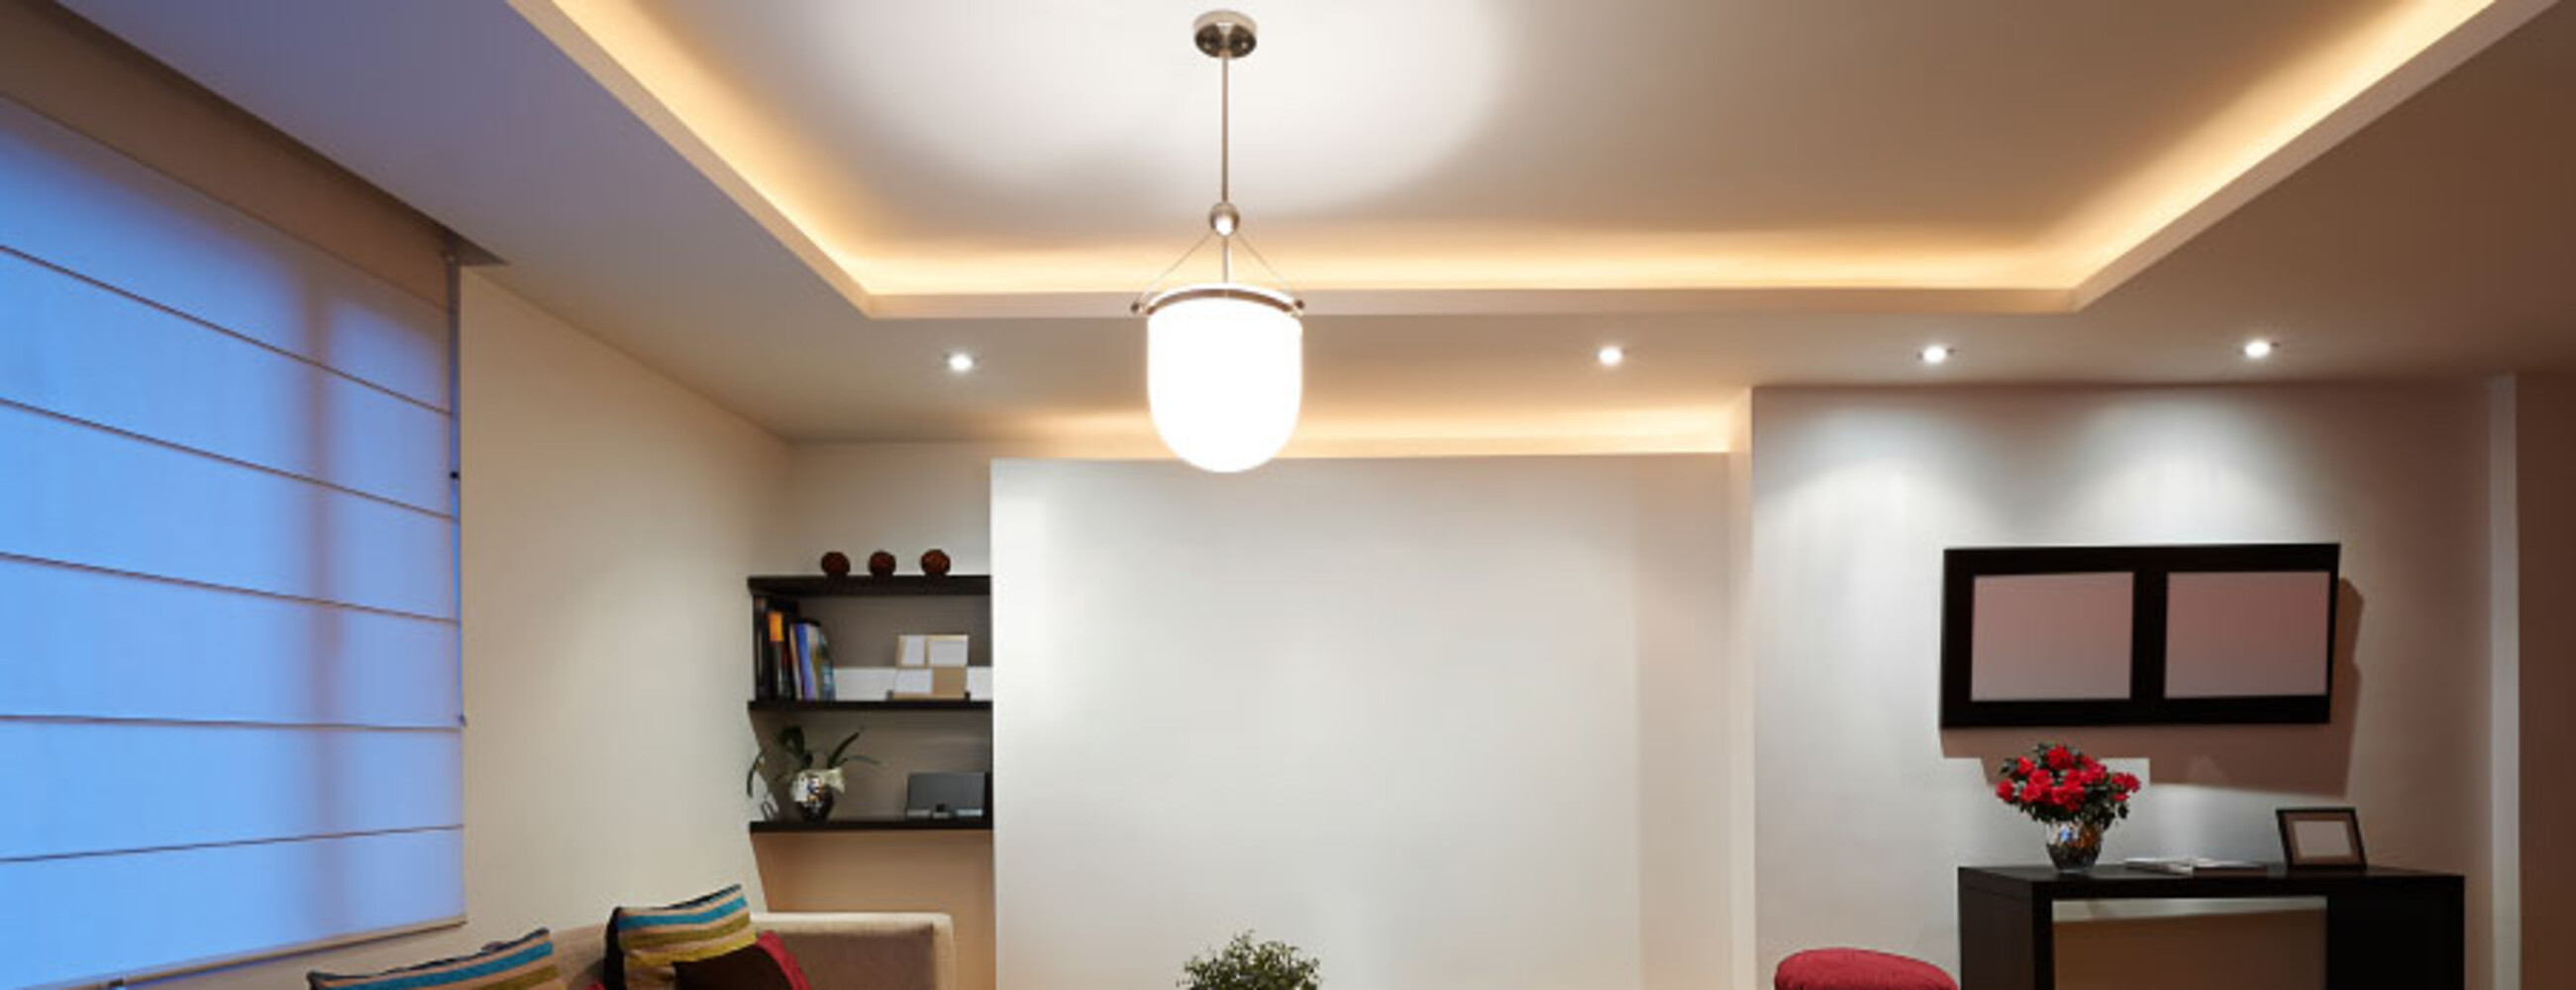 Premium warmweißer LED Streifen von LED Universum, in S Shape Bauweise mit 72 LEDs pro Meter